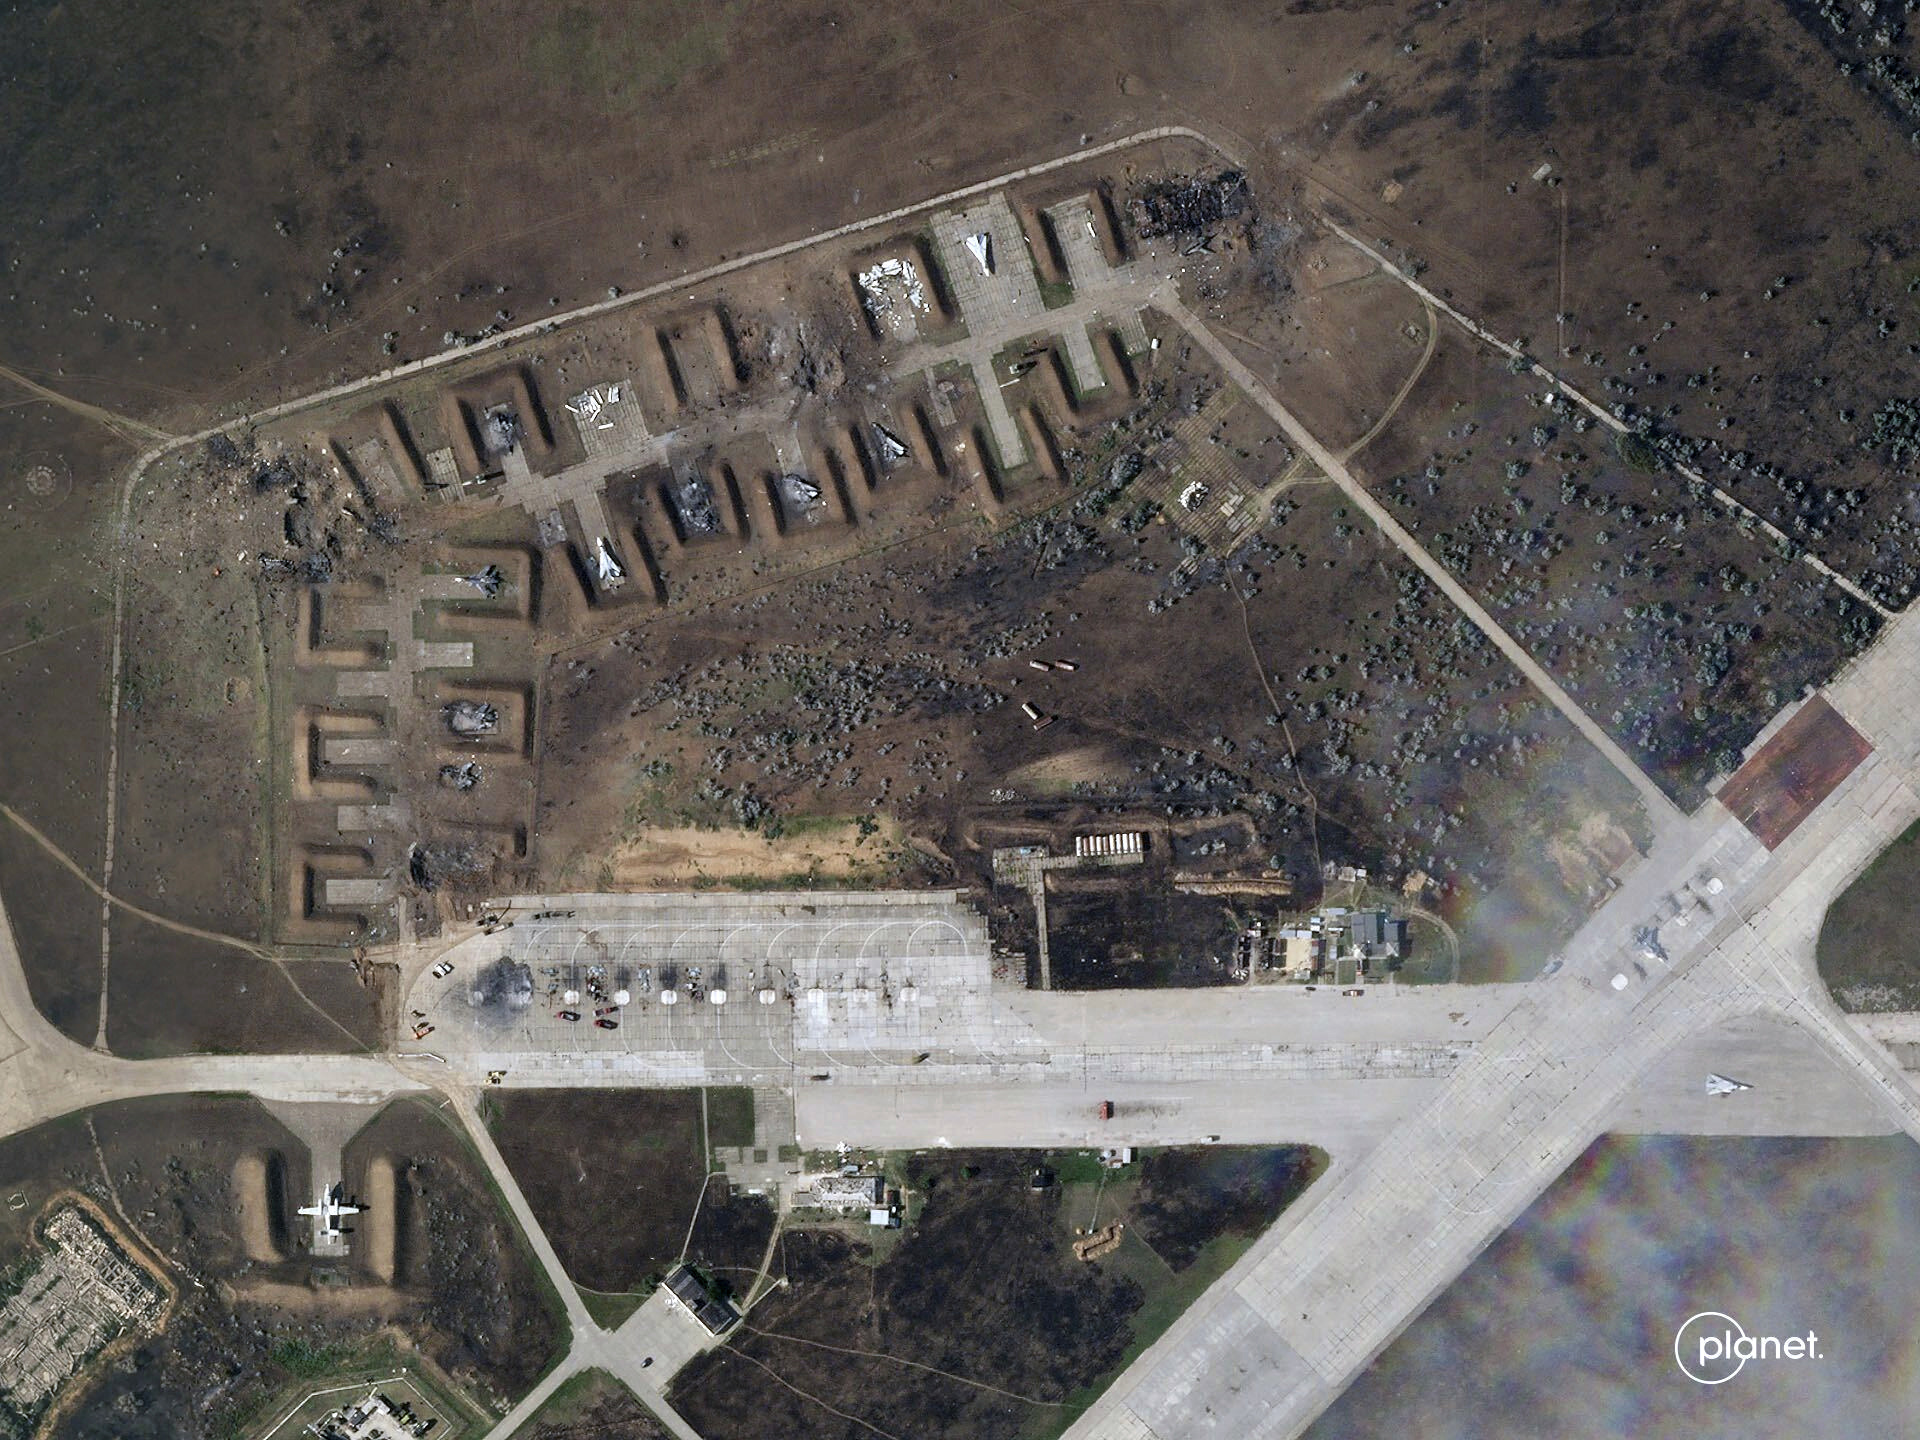 Imagen satelital muestra aviones rusos destruidos en la base aérea Saki, luego de una explosión el martes 9 de agosto, en la península de Crimea. (Planet Labs PBC vía AP)